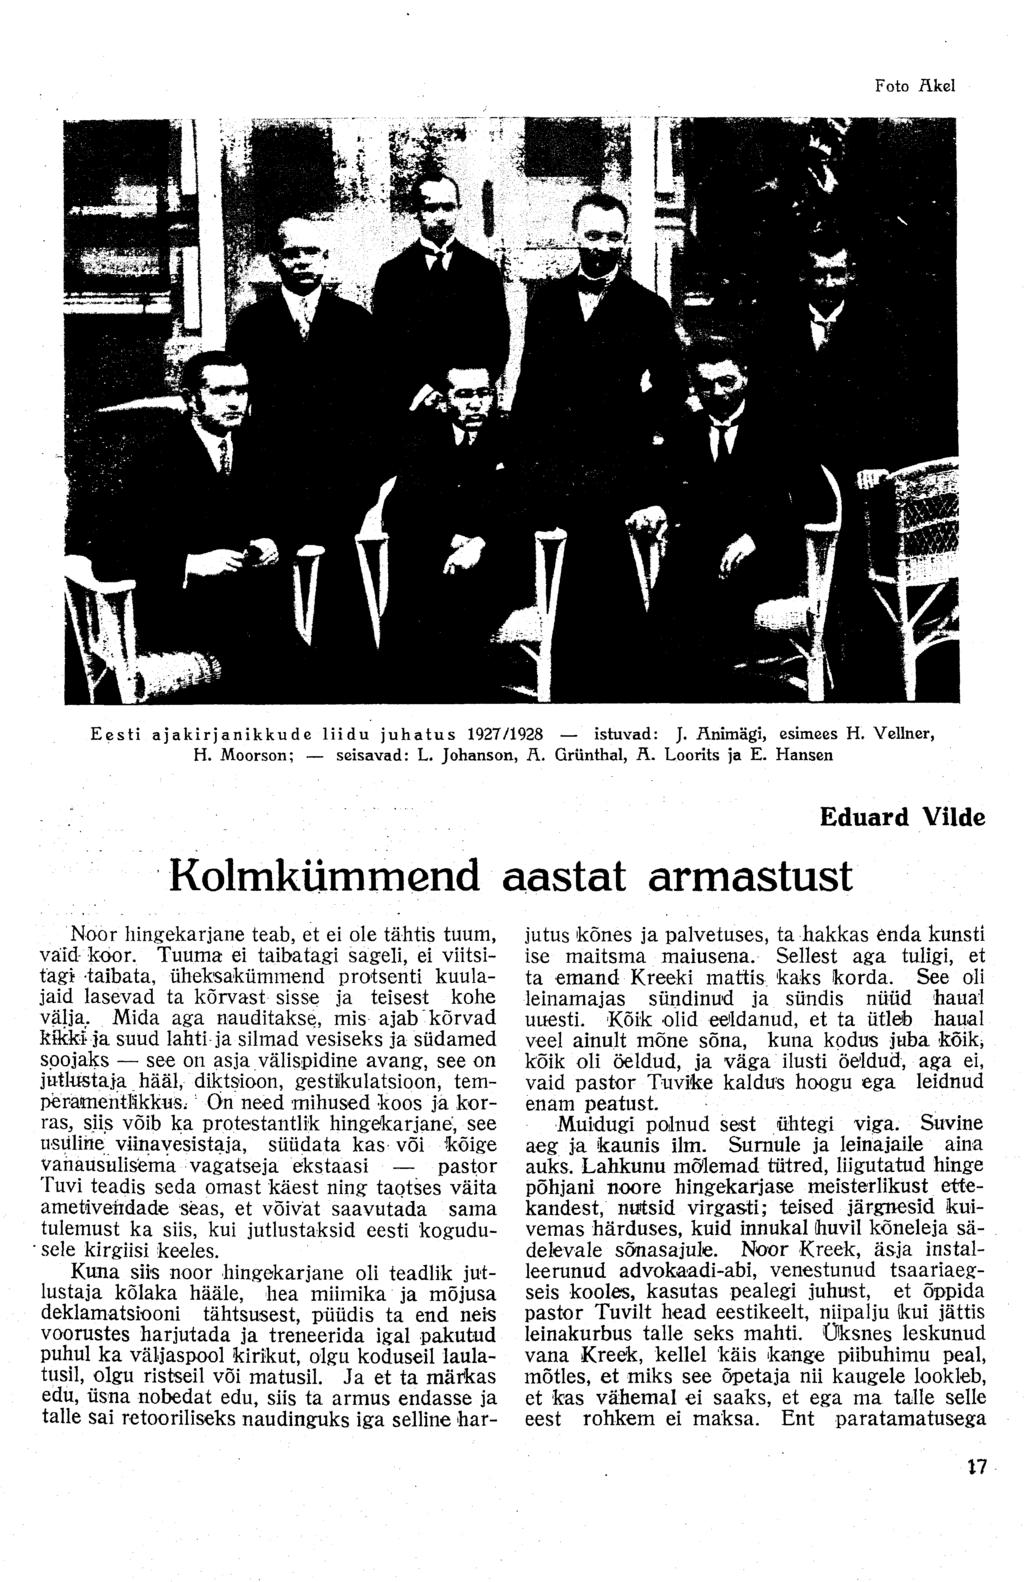 Foto Akel Eesti ajakirjanikkude liidu juhatus 1927/1928 istuvad: J. Änimägi, esimees H. Vellner, H. Moorson; seisavad: L. Johanson, Ä. Grünthal, A. Loorits ja E.